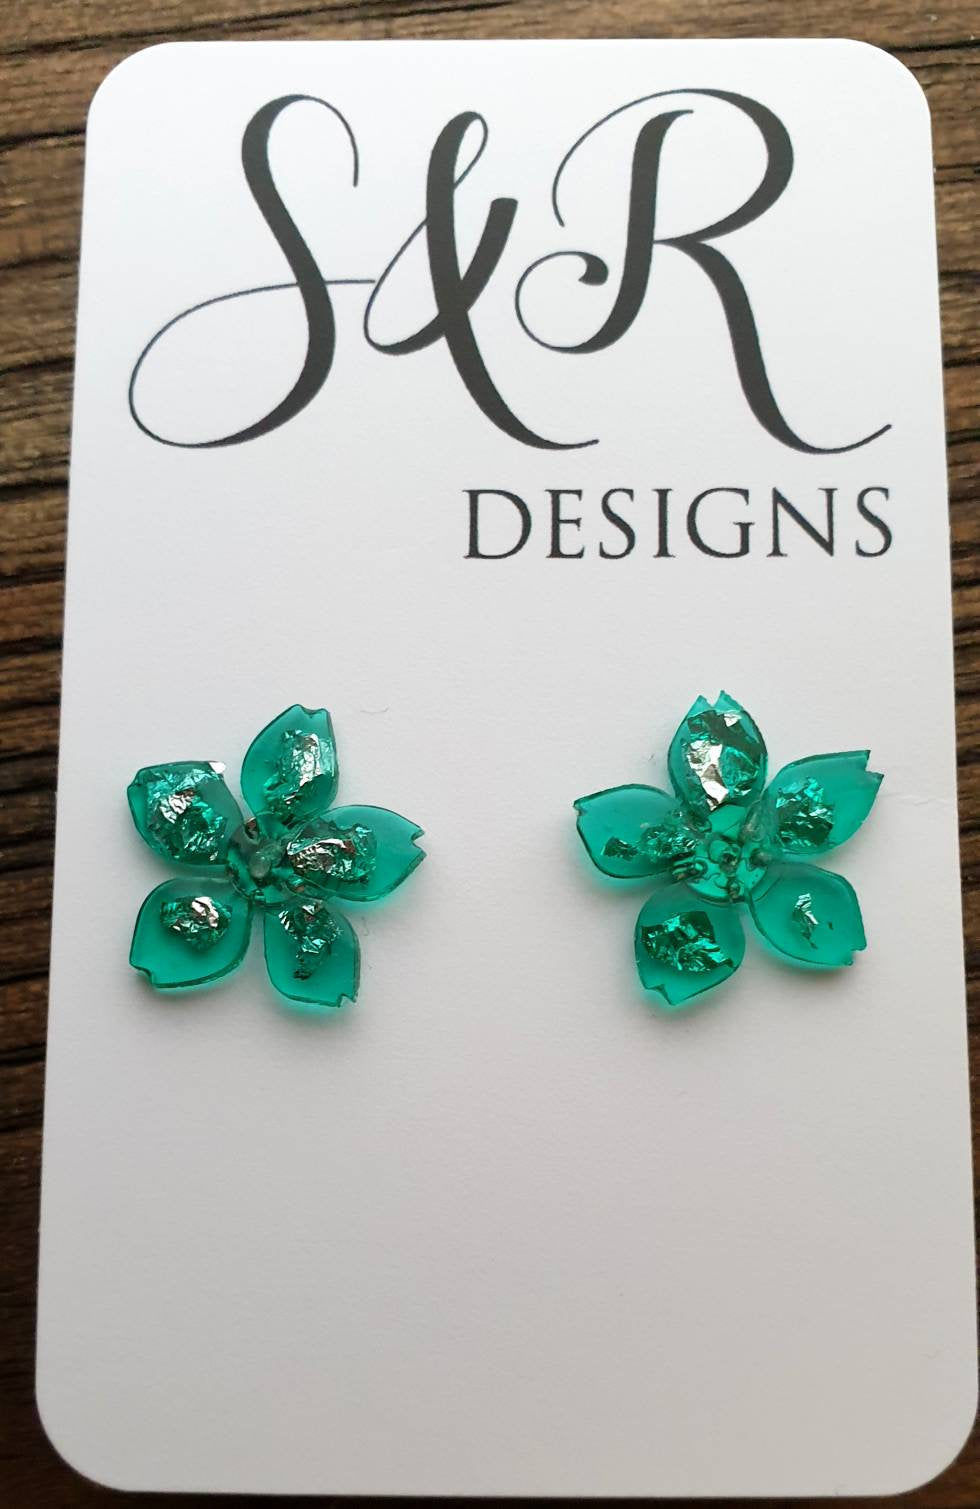 Flower Resin Earrings, Light Emerald Green Silver Leaf Earrings